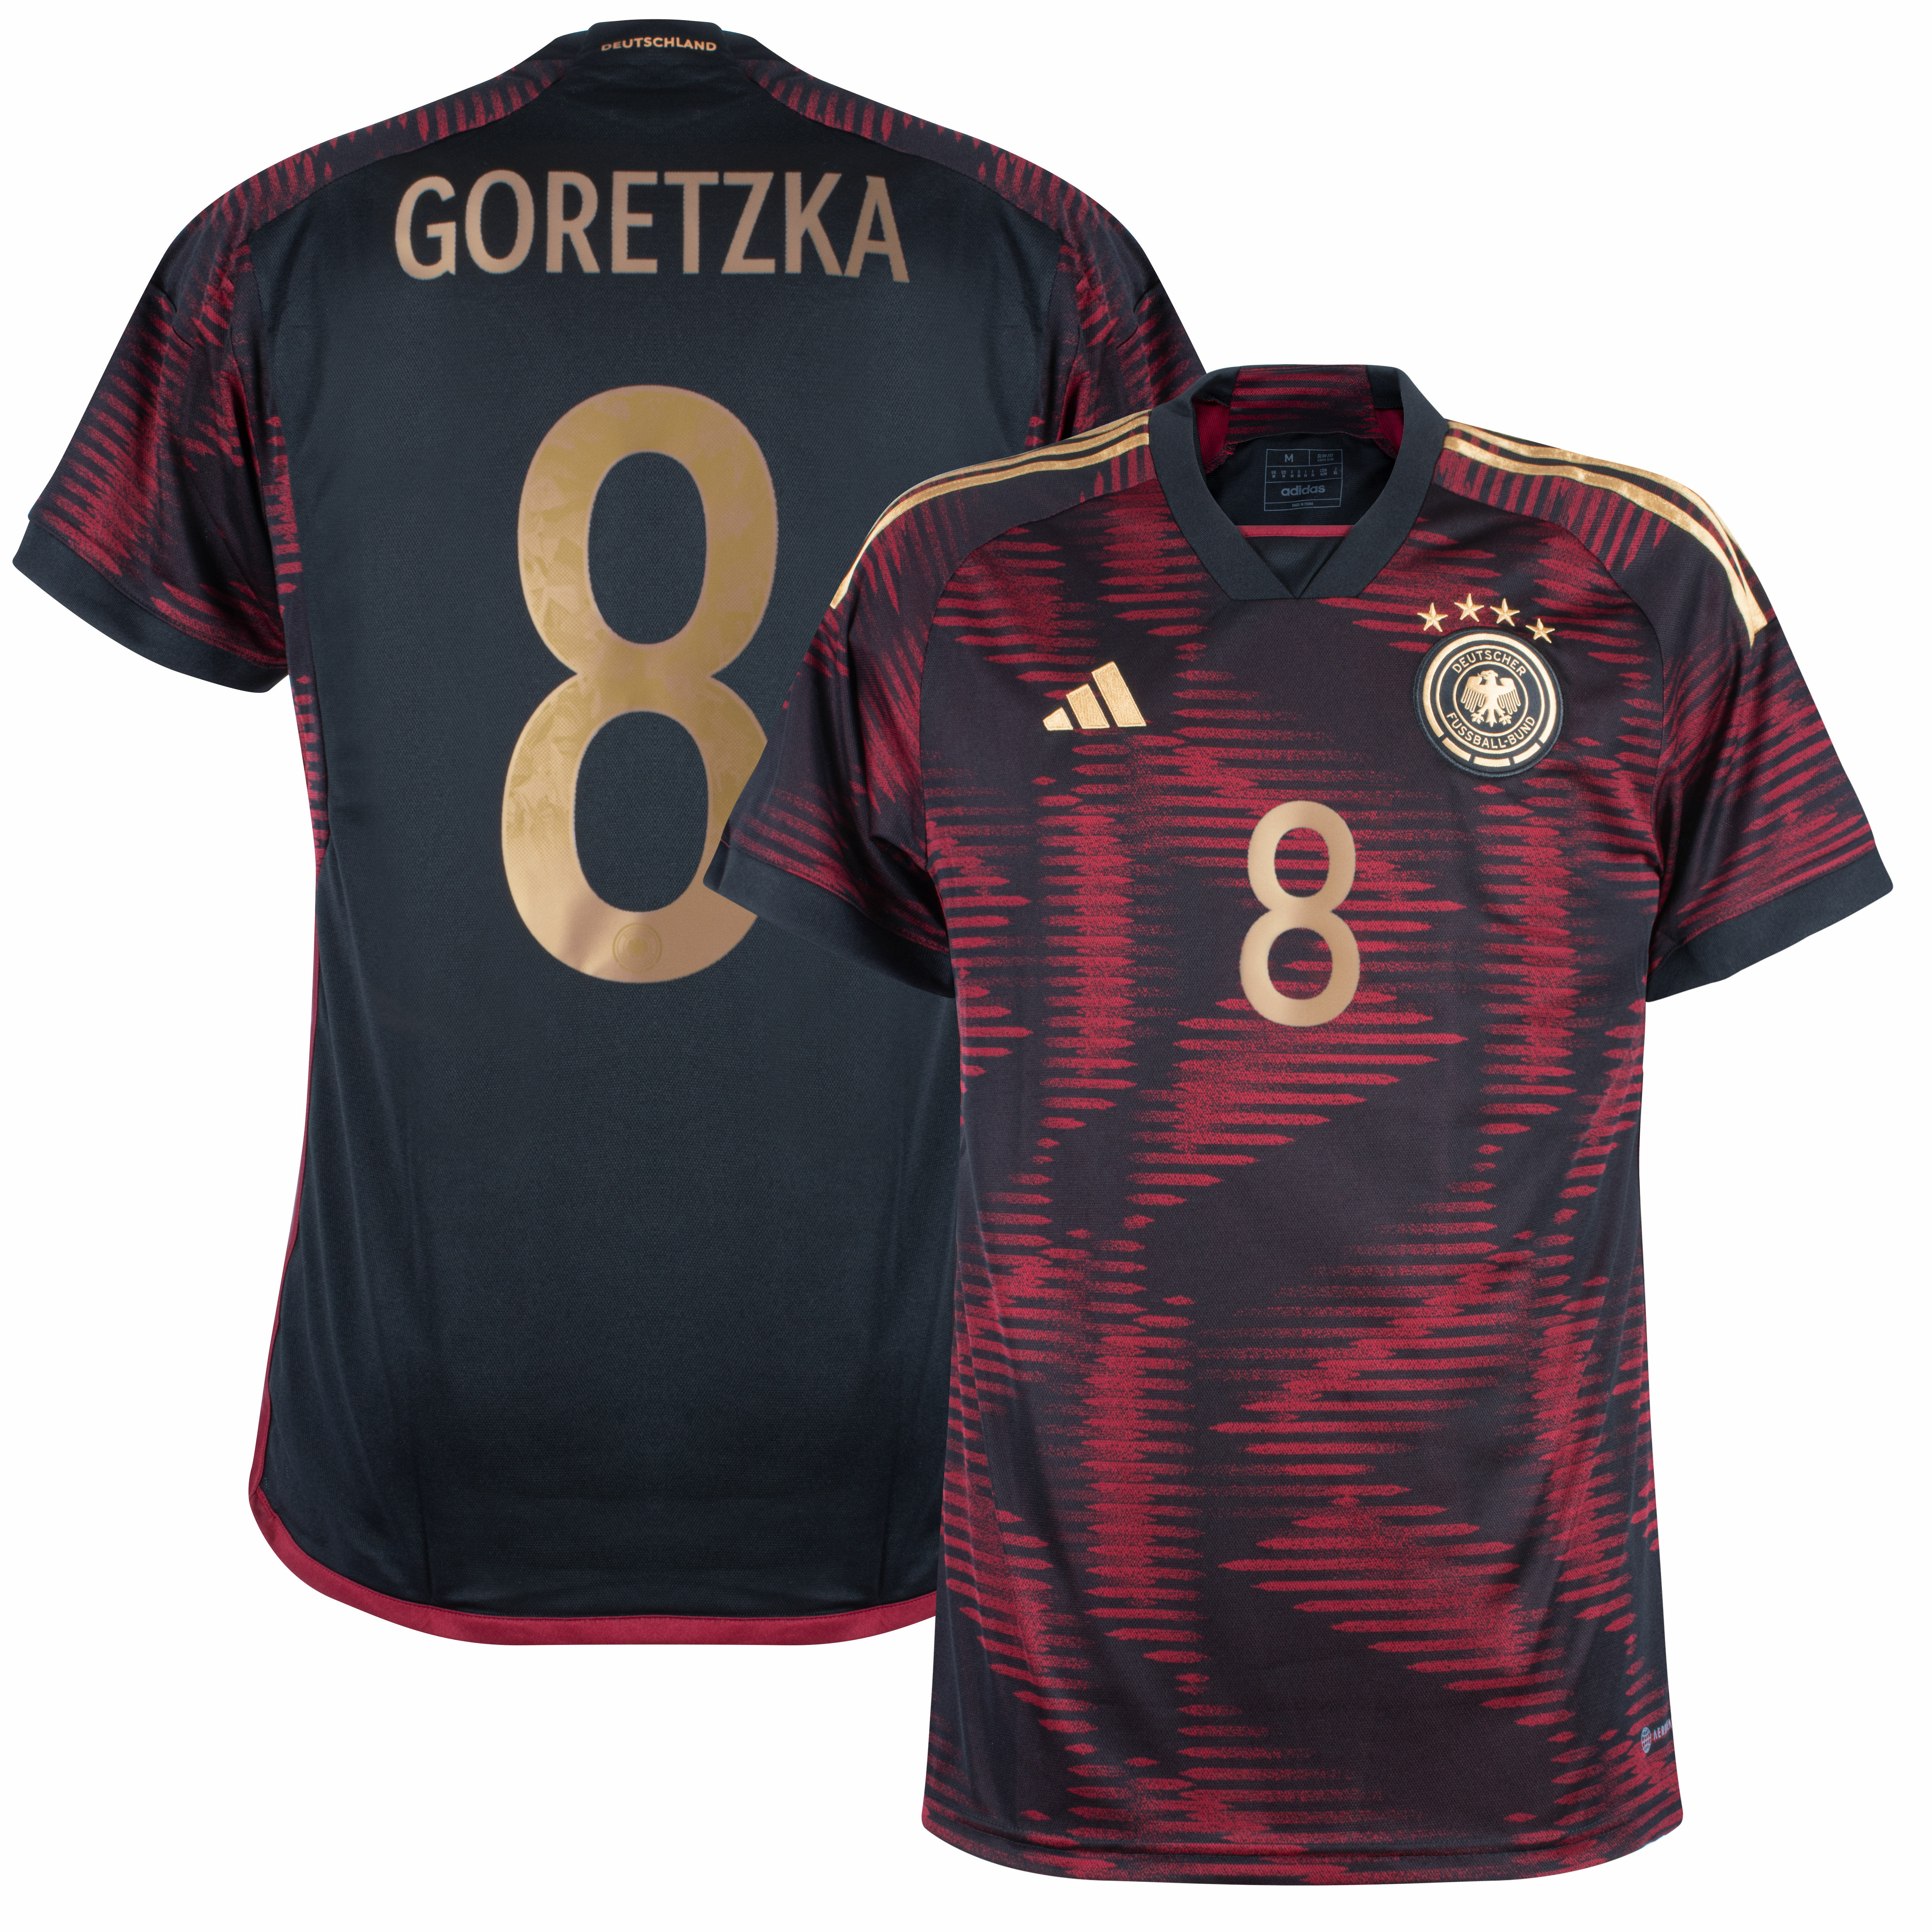 Německo - Dres fotbalový - oficiální potisk, černý, Leon Goretzka, sezóna 2022/23, číslo 8, venkovní